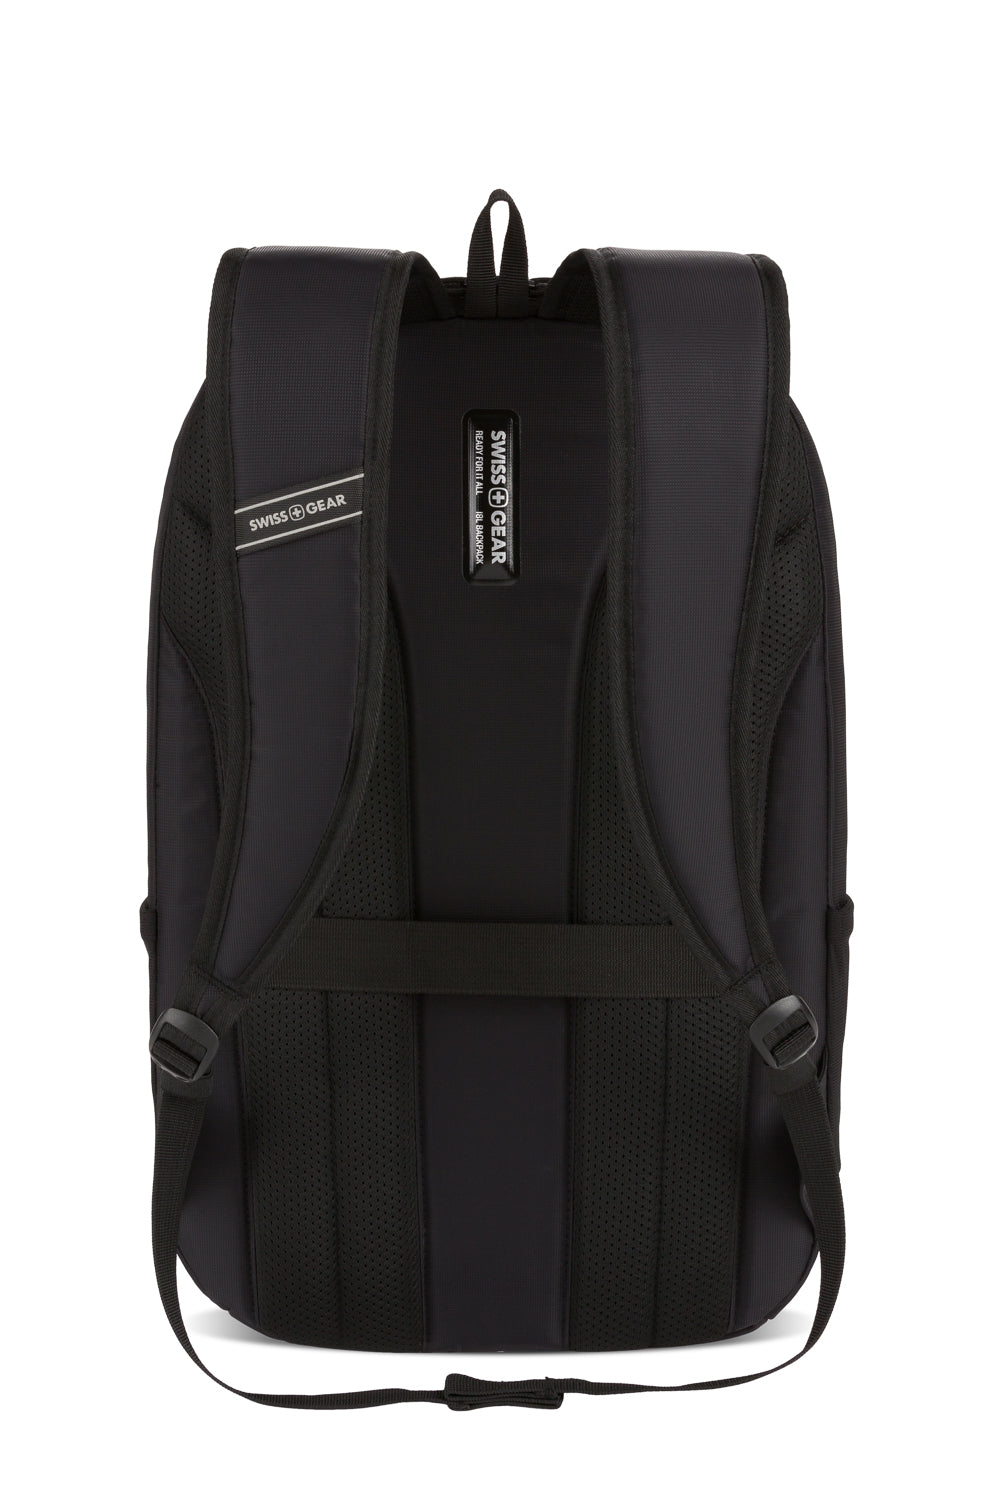 SwissGear 8117 15" Laptop Backpack